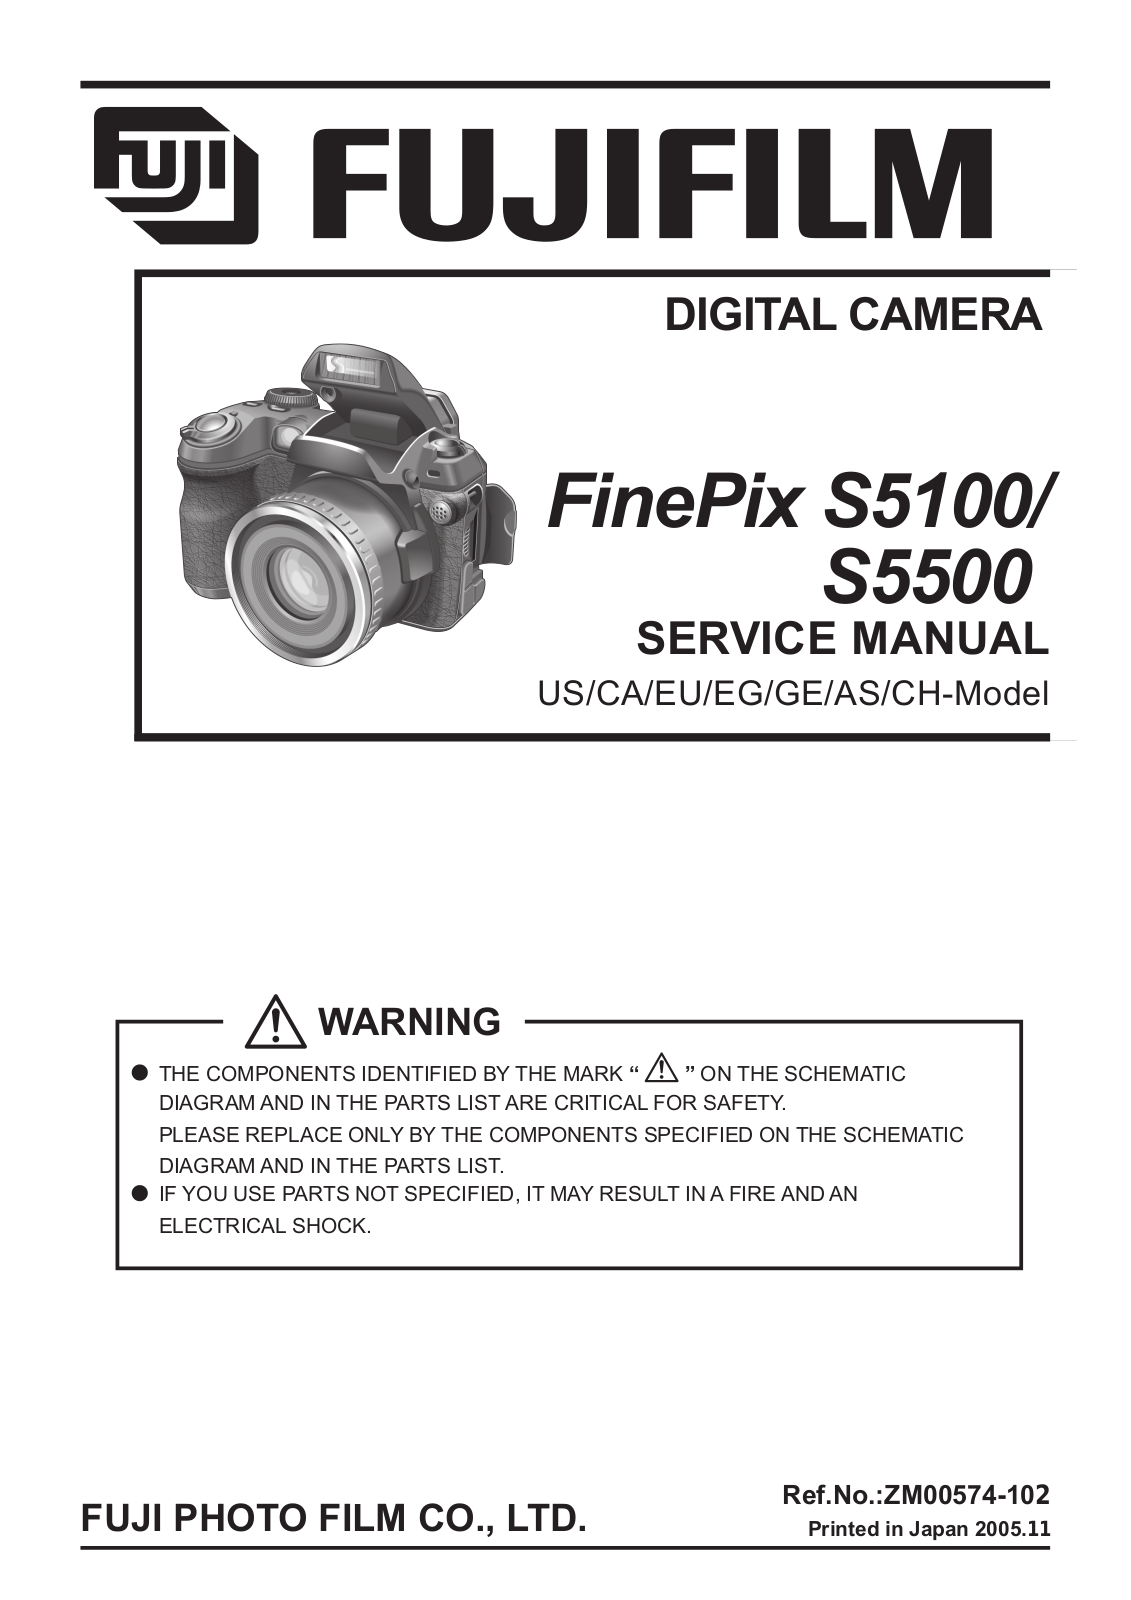 FUJIFILM FinePix S5100, FinePix S5500 Service Manual